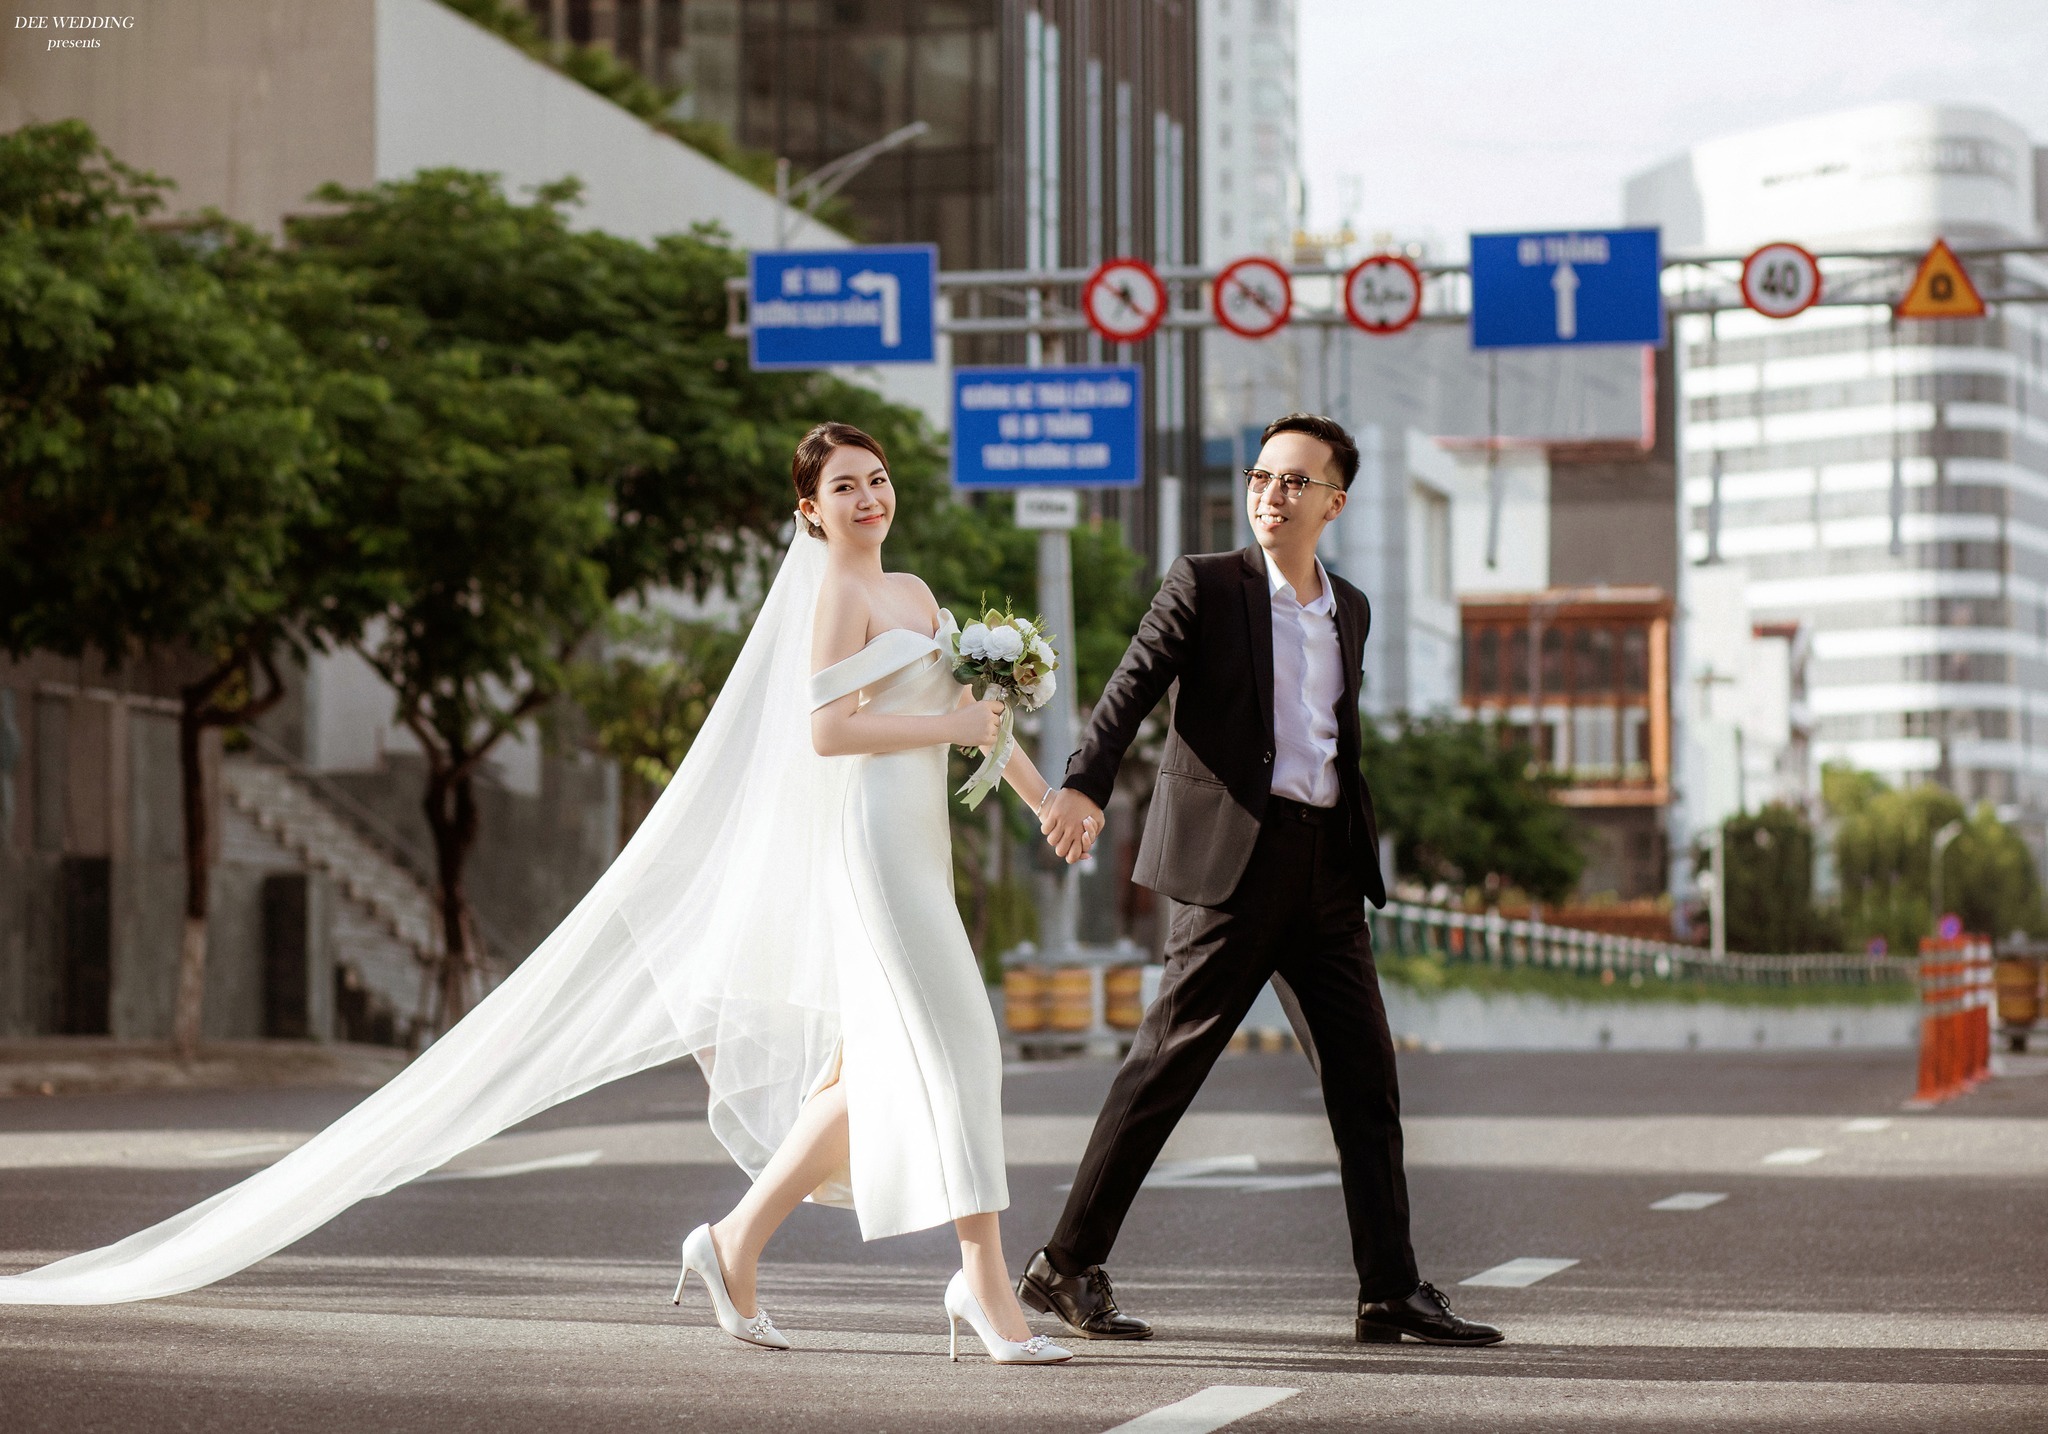 img src="Ảnh cưới ngoại cảnh Đà nẵng.png" alt="Ảnh cưới chụp tại đường phố Đà Nẵng"